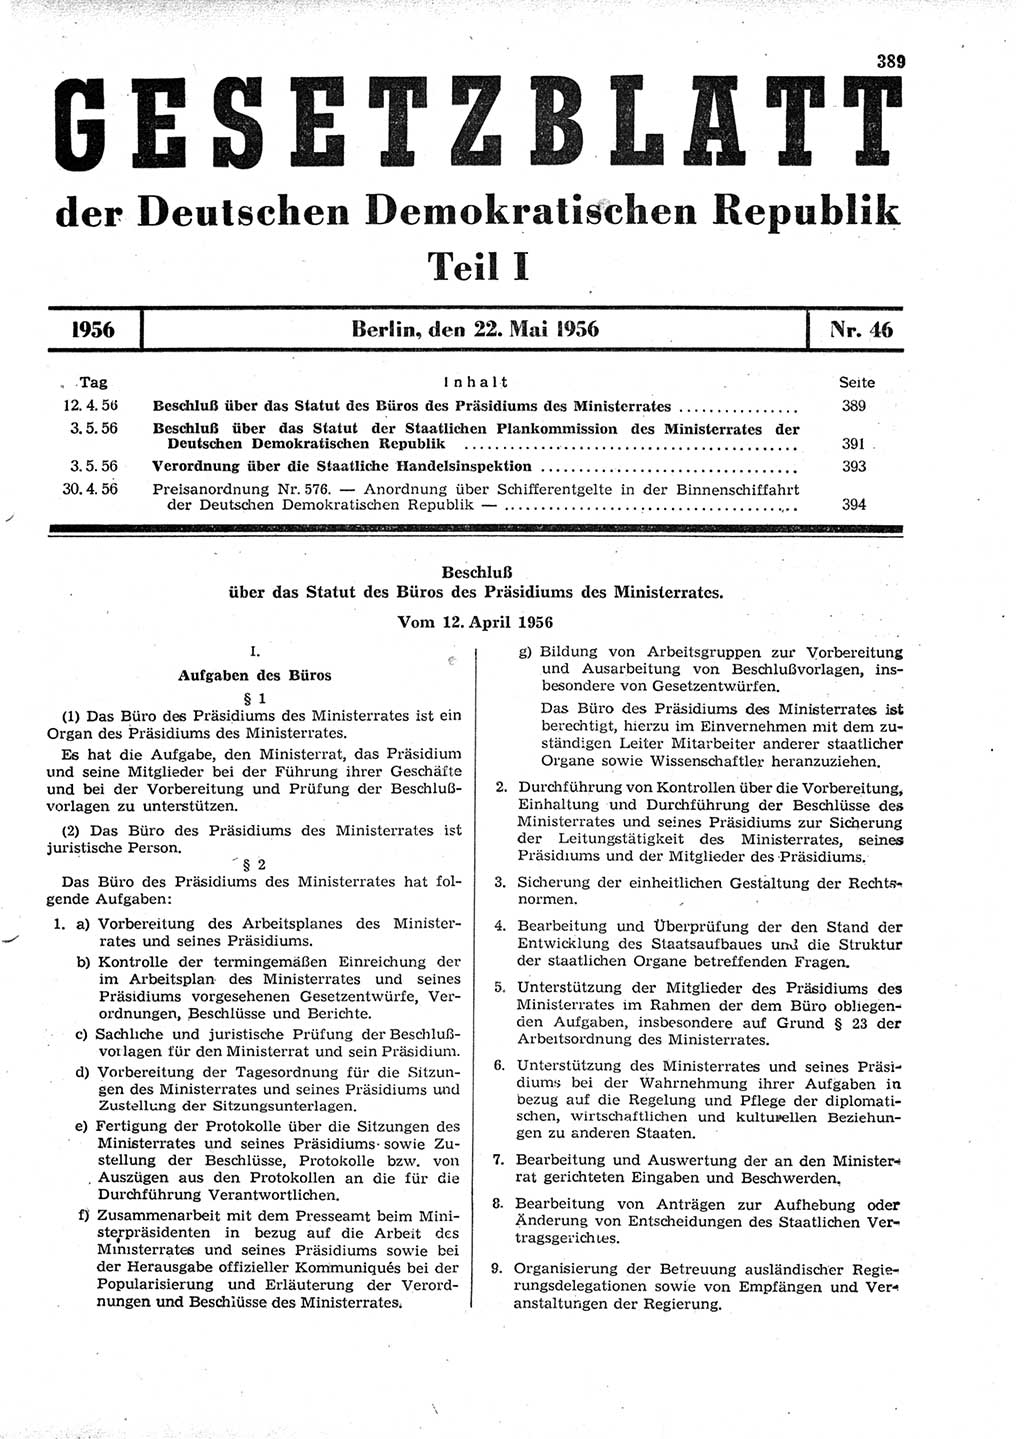 Gesetzblatt (GBl.) der Deutschen Demokratischen Republik (DDR) Teil Ⅰ 1956, Seite 389 (GBl. DDR Ⅰ 1956, S. 389)